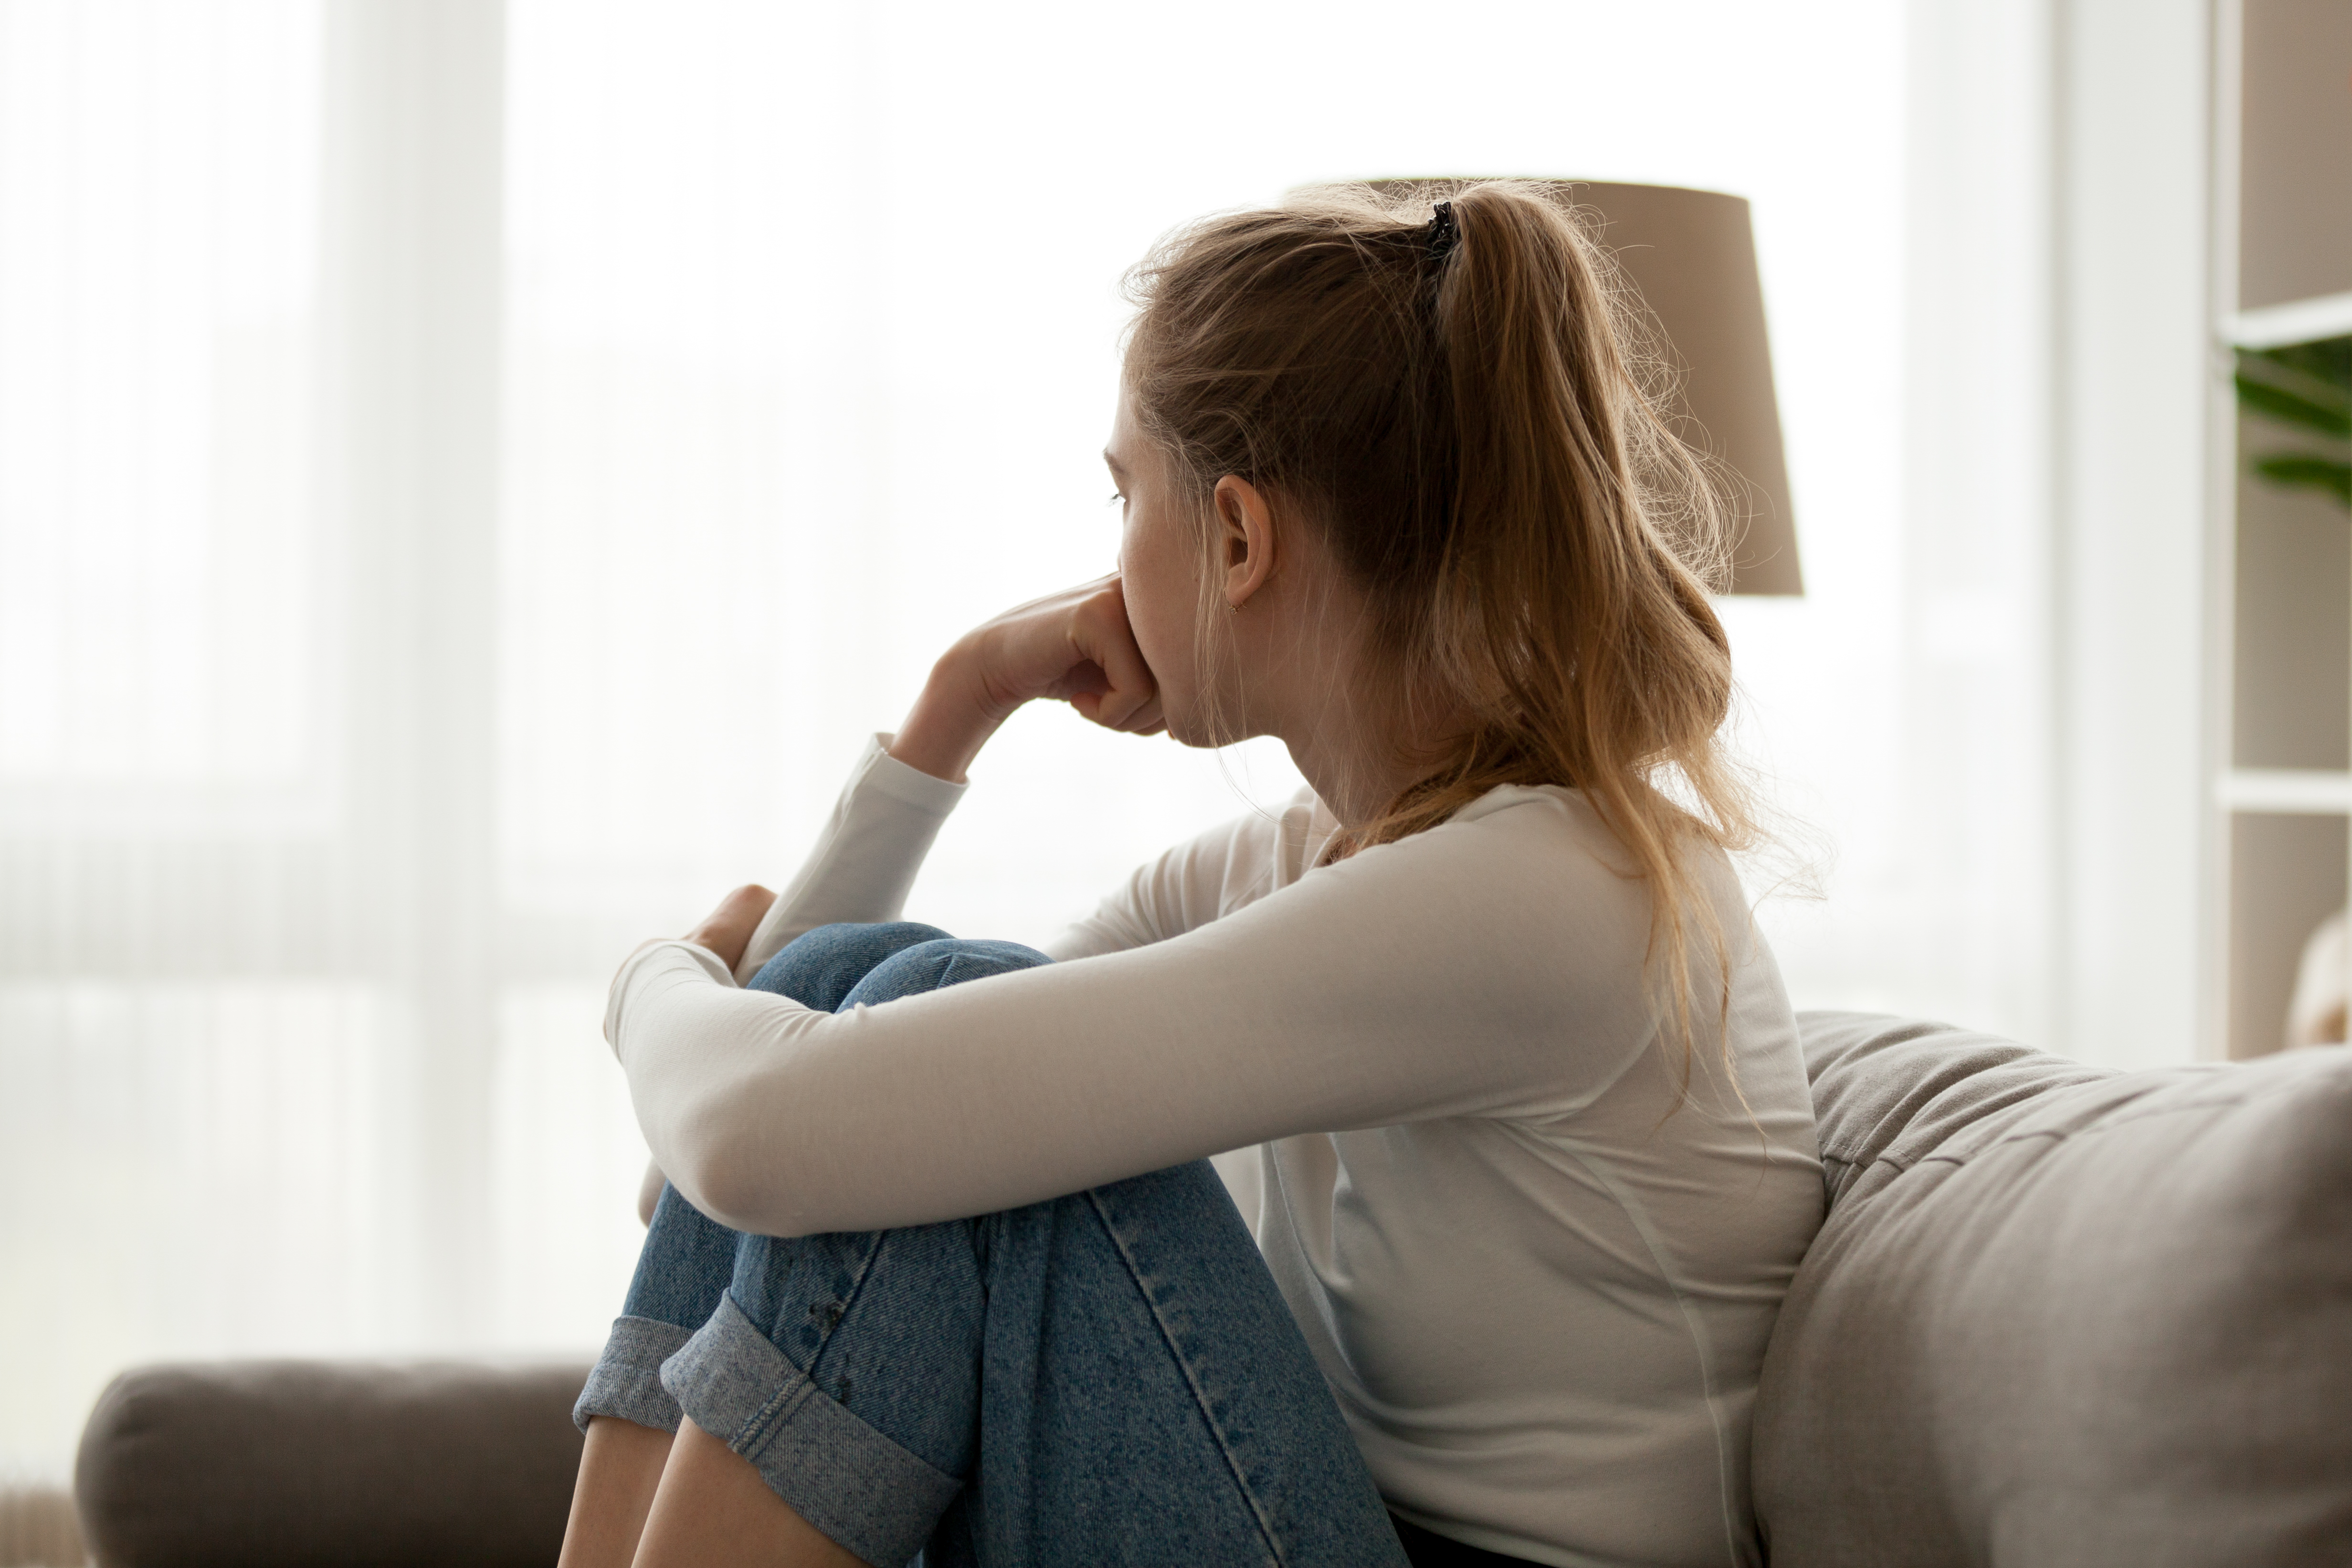 Ein Foto von einer Frau, die in Gedanken versunken auf einer Couch sitzt | Quelle: Shutterstock